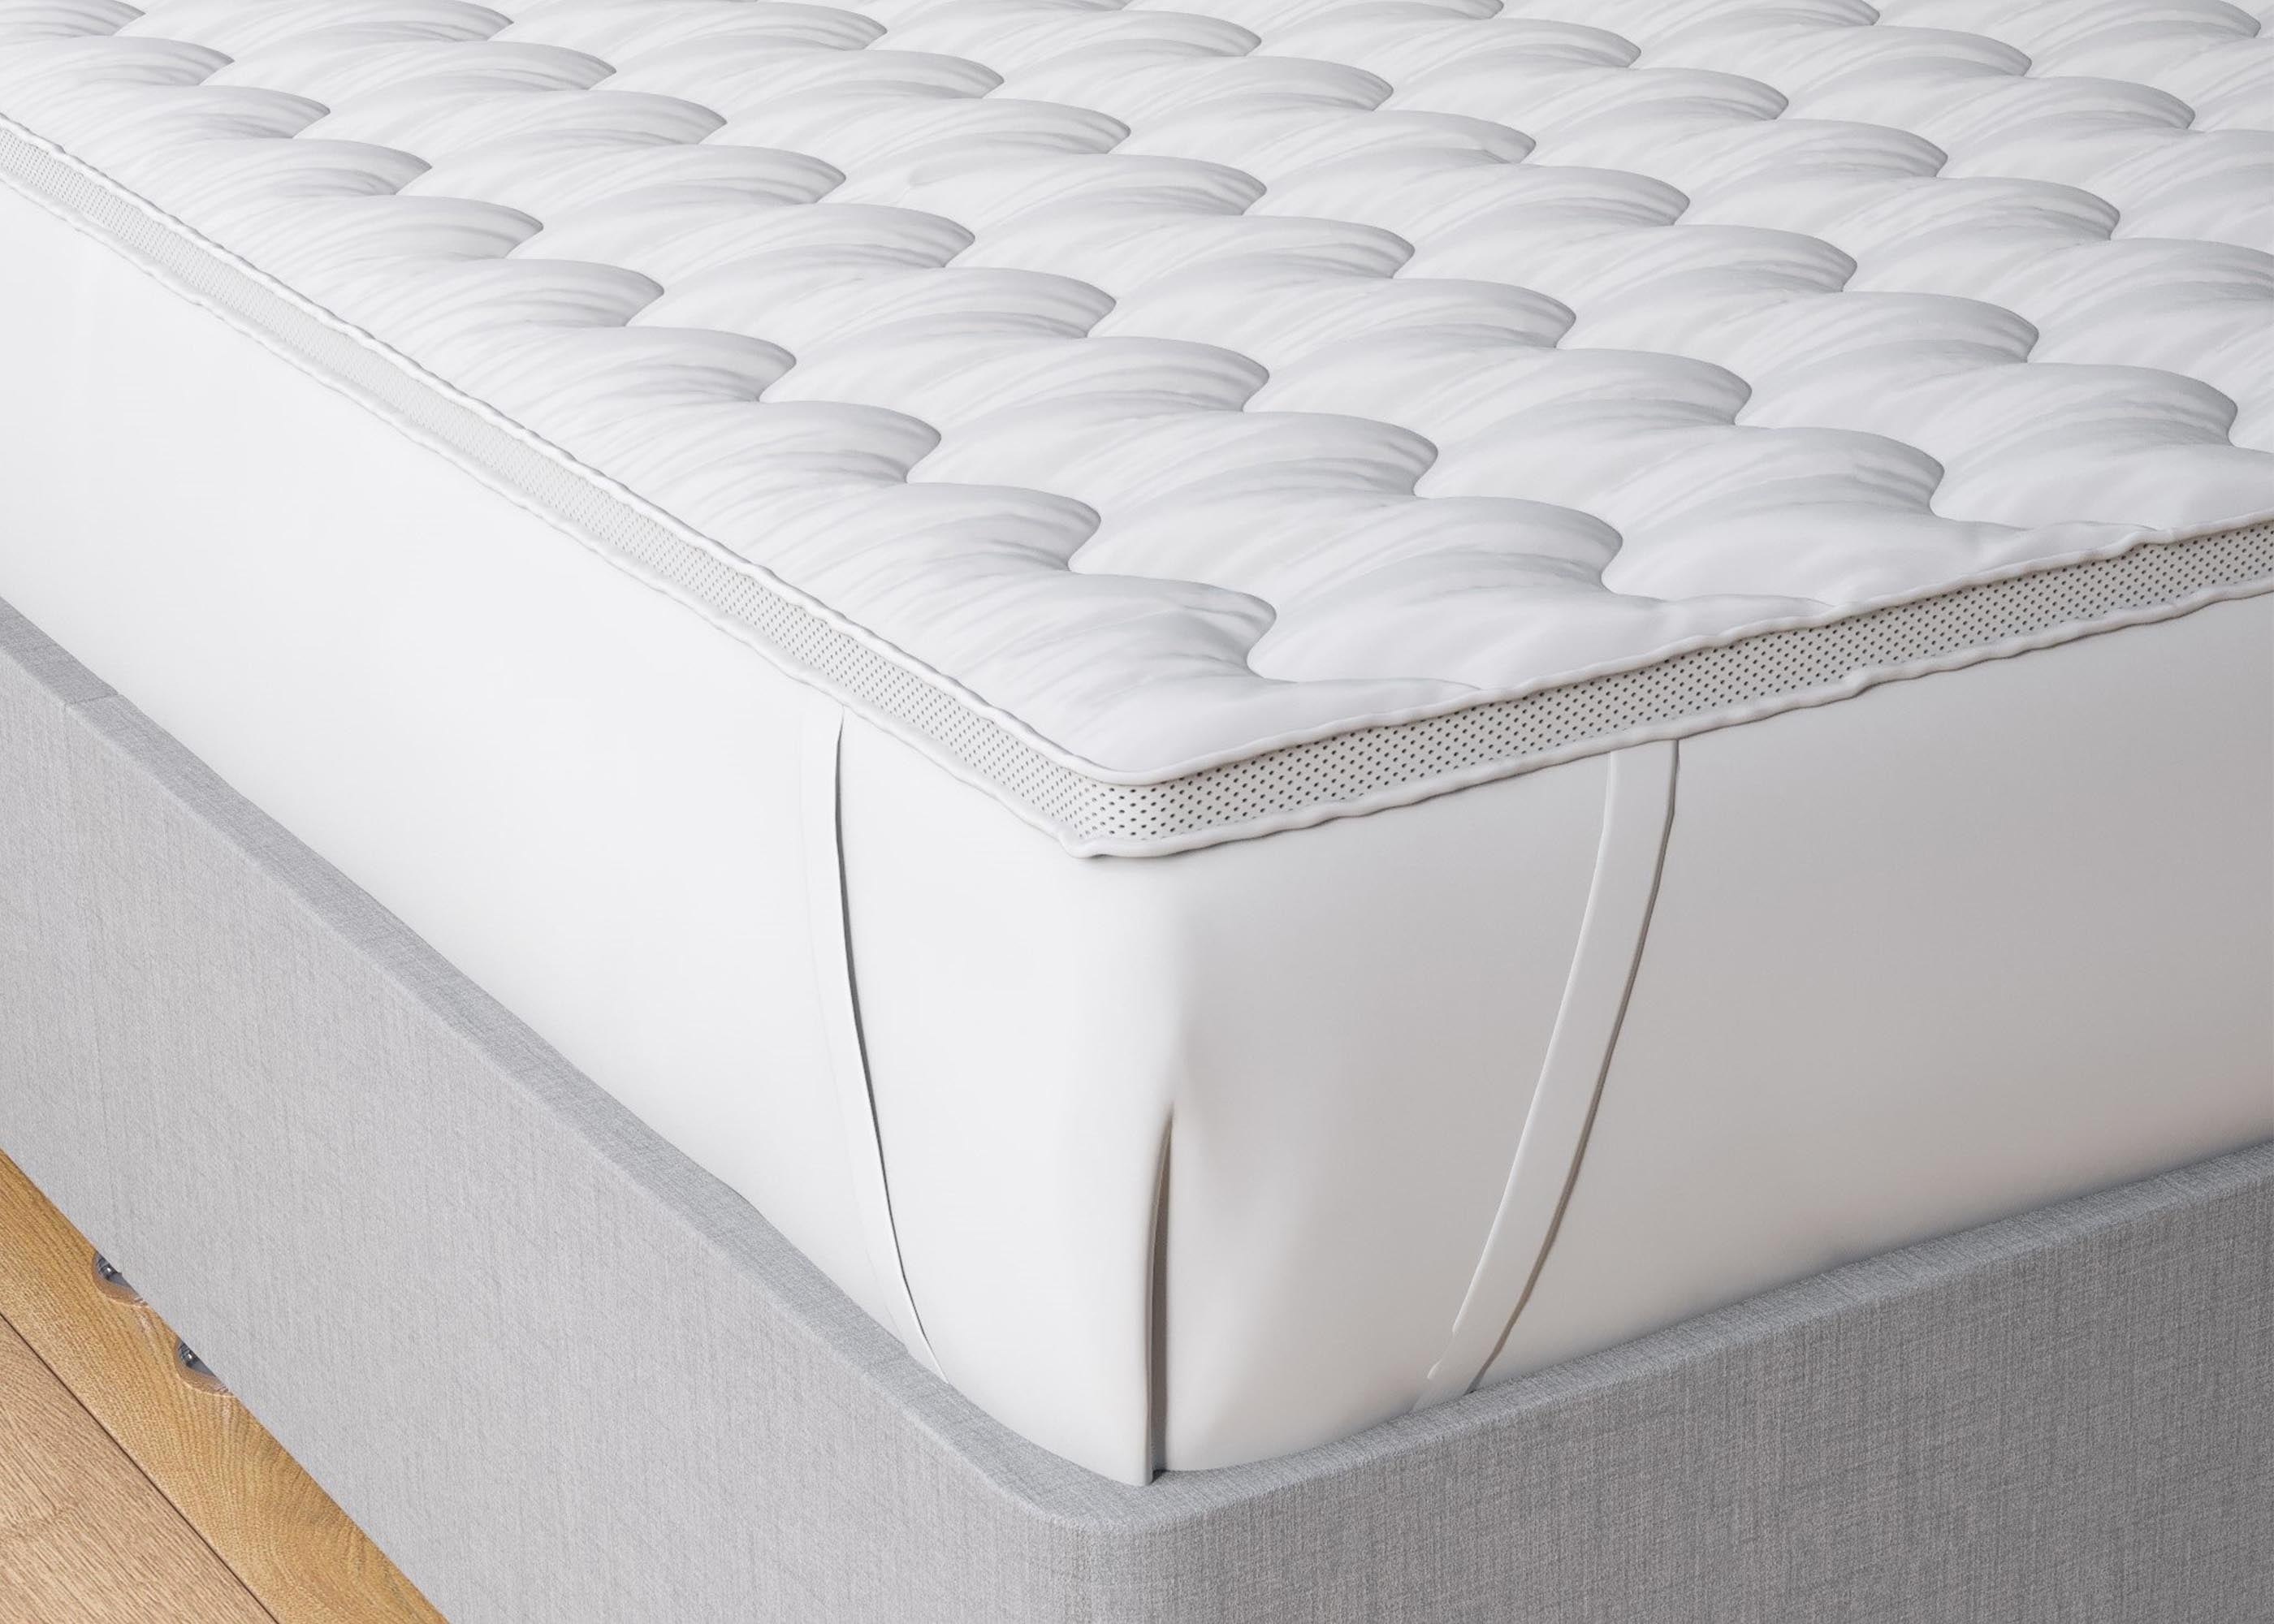 insulate topper for air mattress